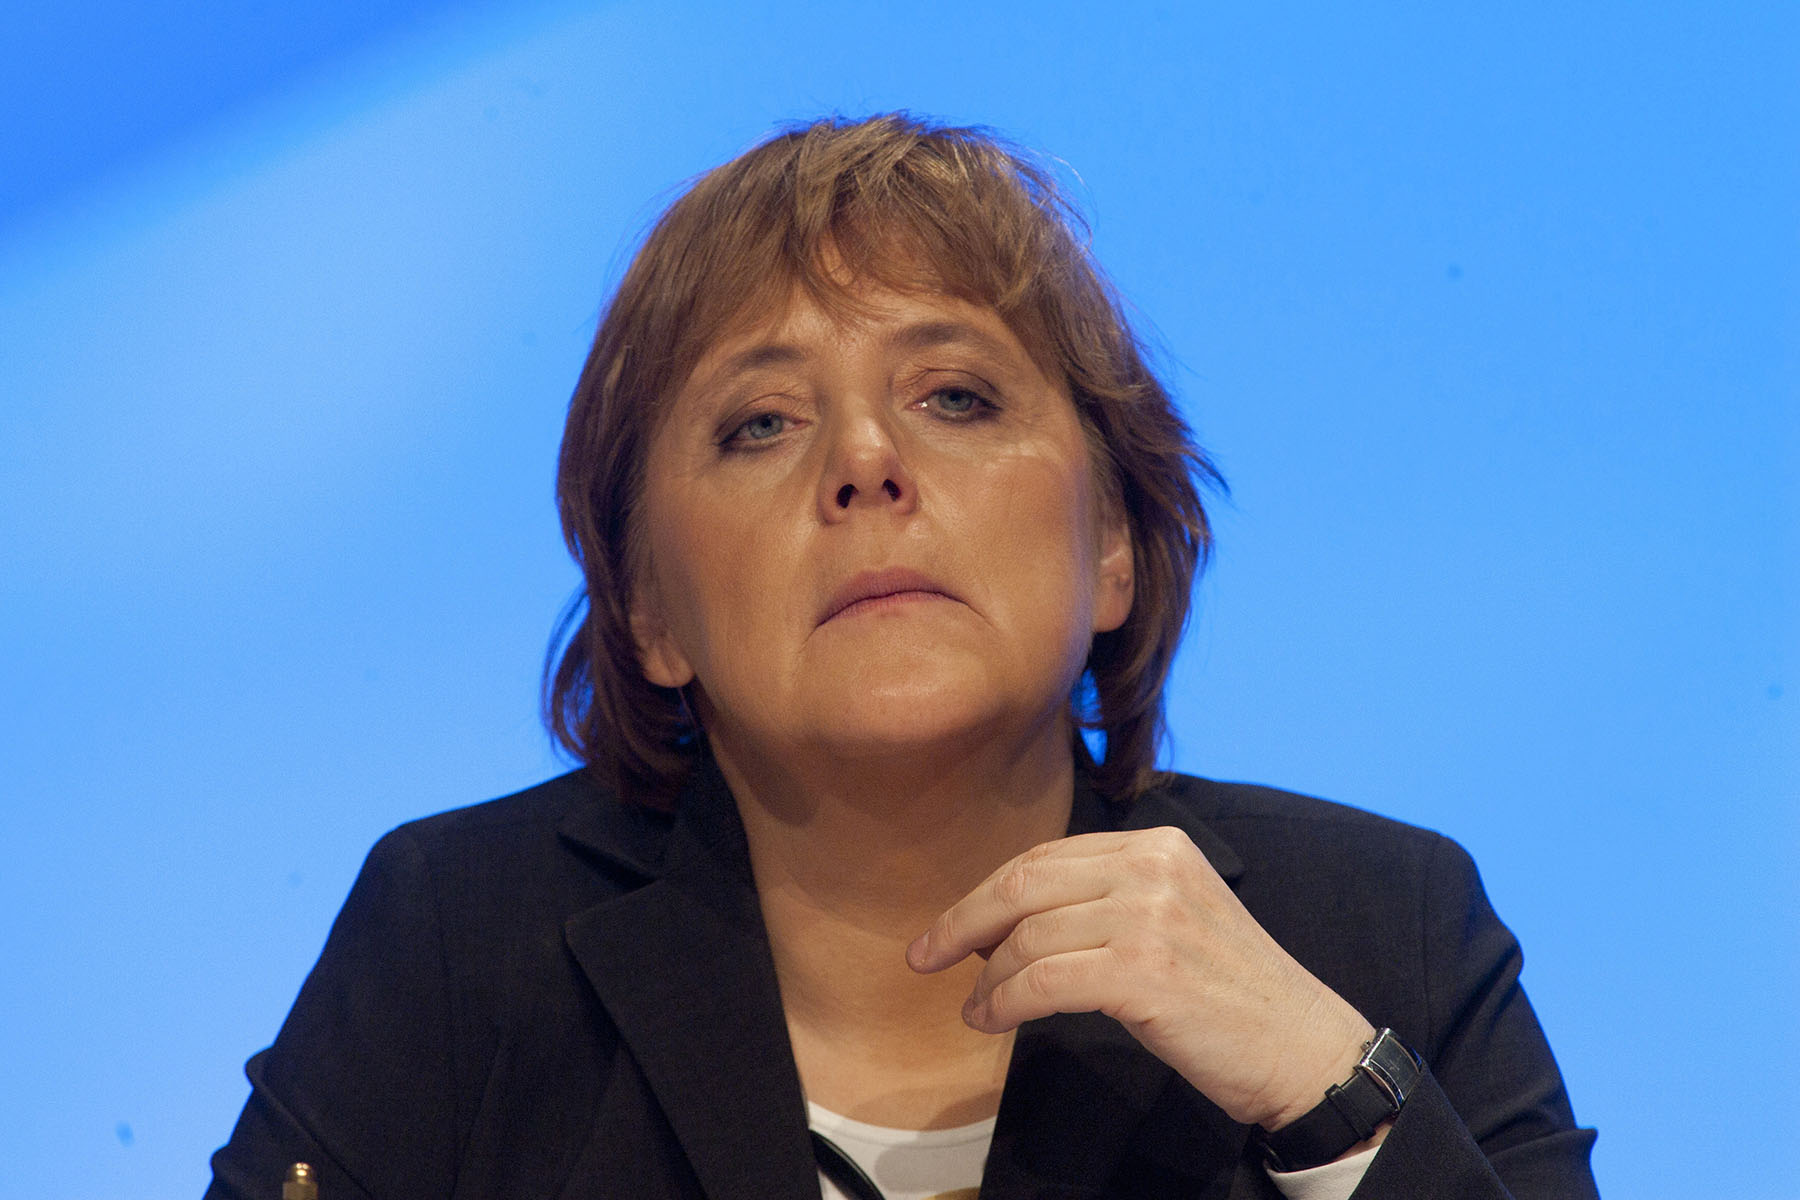 Angela Merkel auf dem CDU Bundesparteitag in Düsseldorf